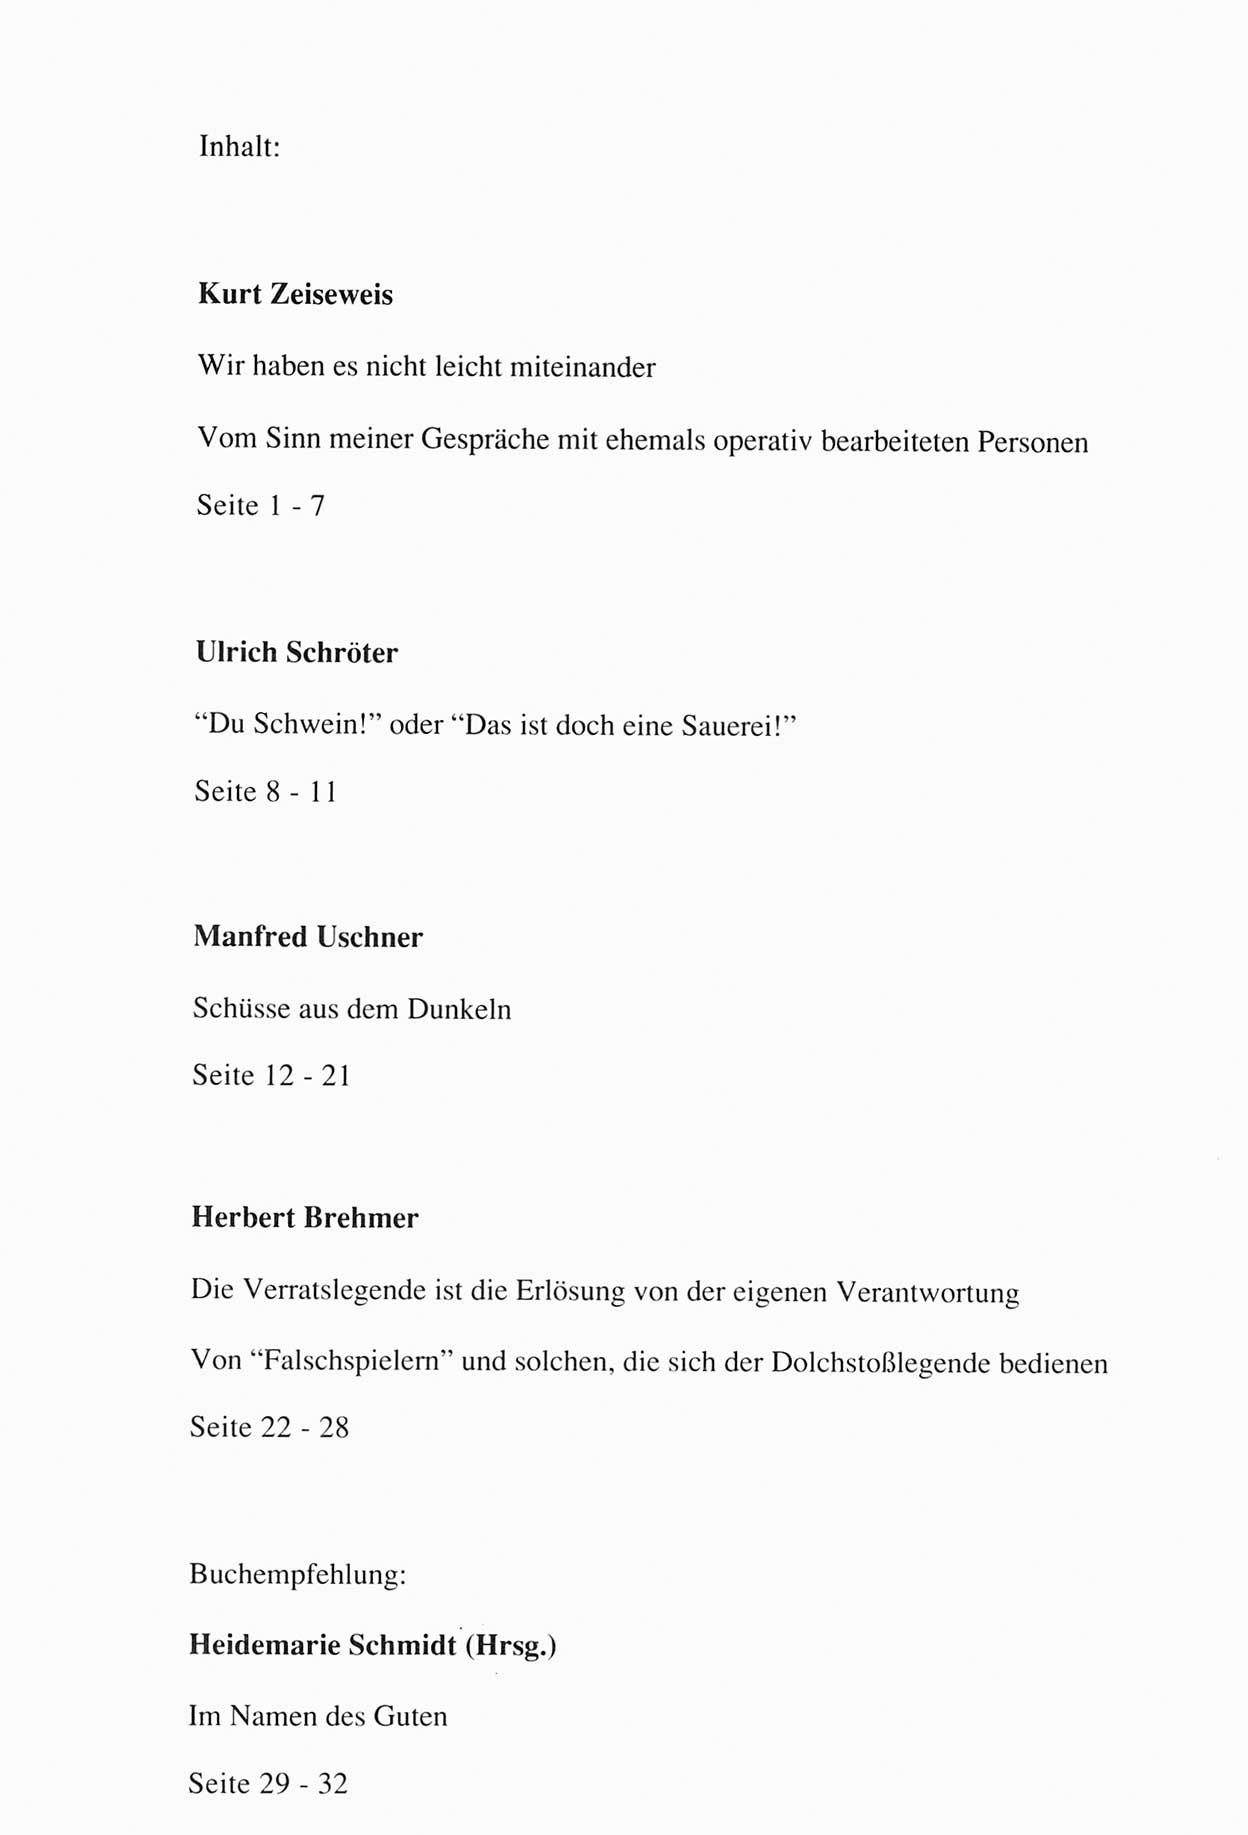 Zwie-Gespräch, Beiträge zur Aufarbeitung der Staatssicherheits-Vergangenheit [Deutsche Demokratische Republik (DDR)], Ausgabe Nr. 15, Berlin 1993, Seite 33 (Zwie-Gespr. Ausg. 15 1993, S. 33)